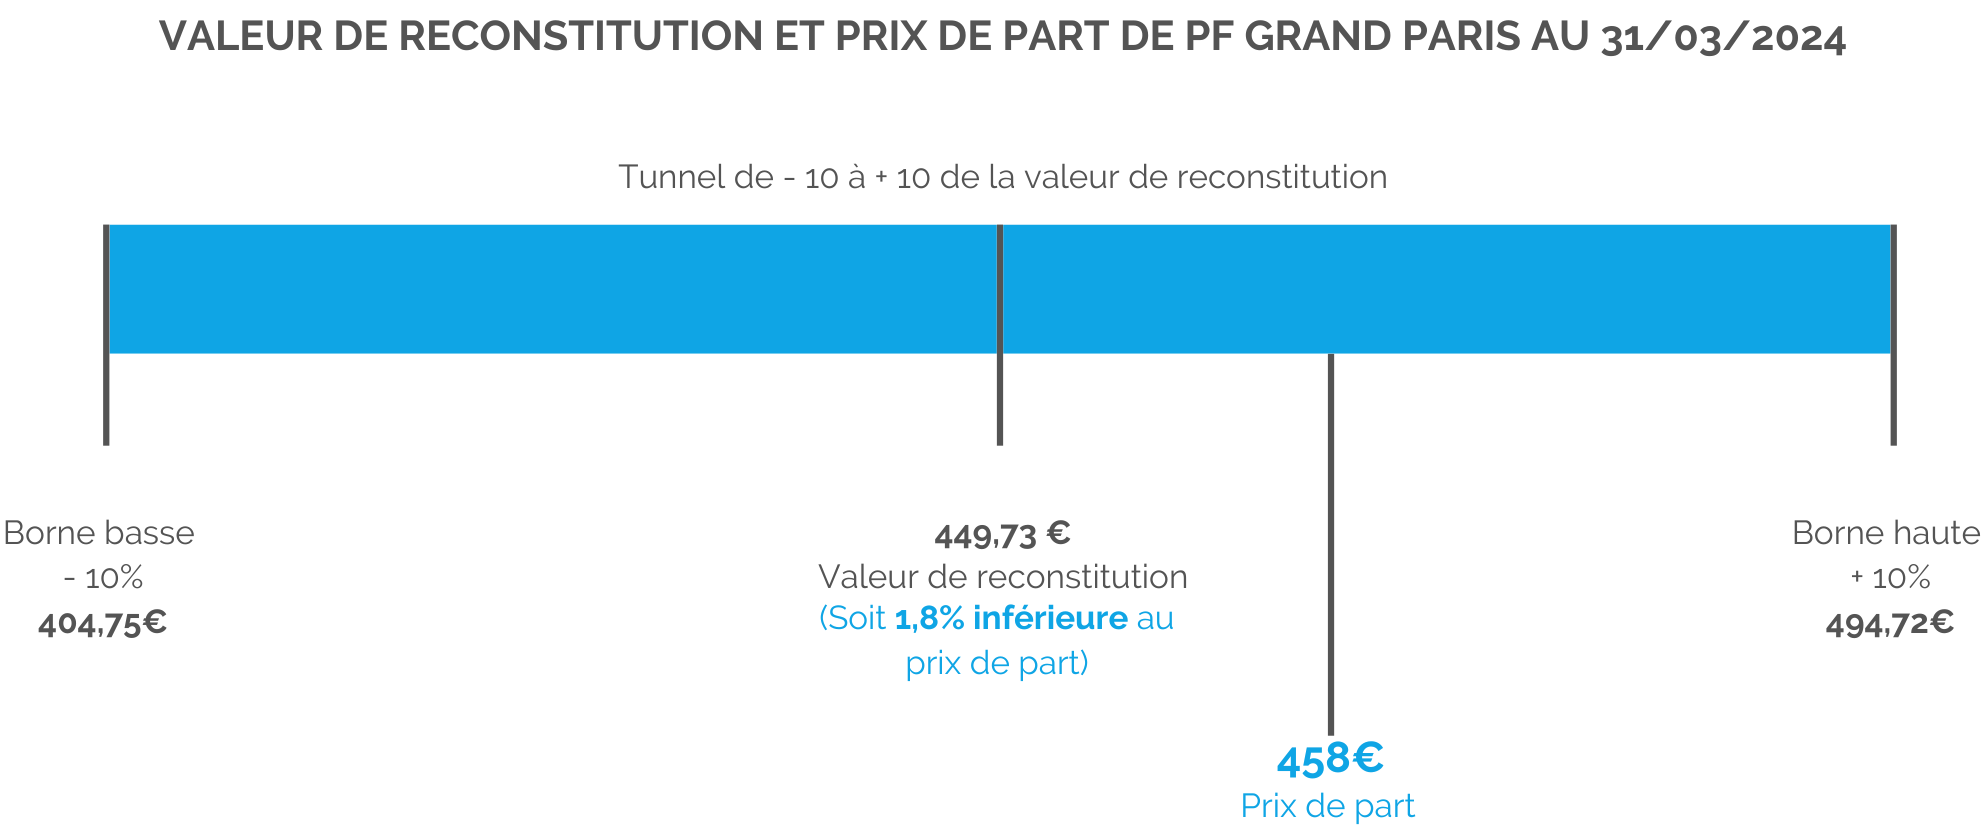 schéma-valeur-reconstitution-prix-de-part-pf-grand-paris.png